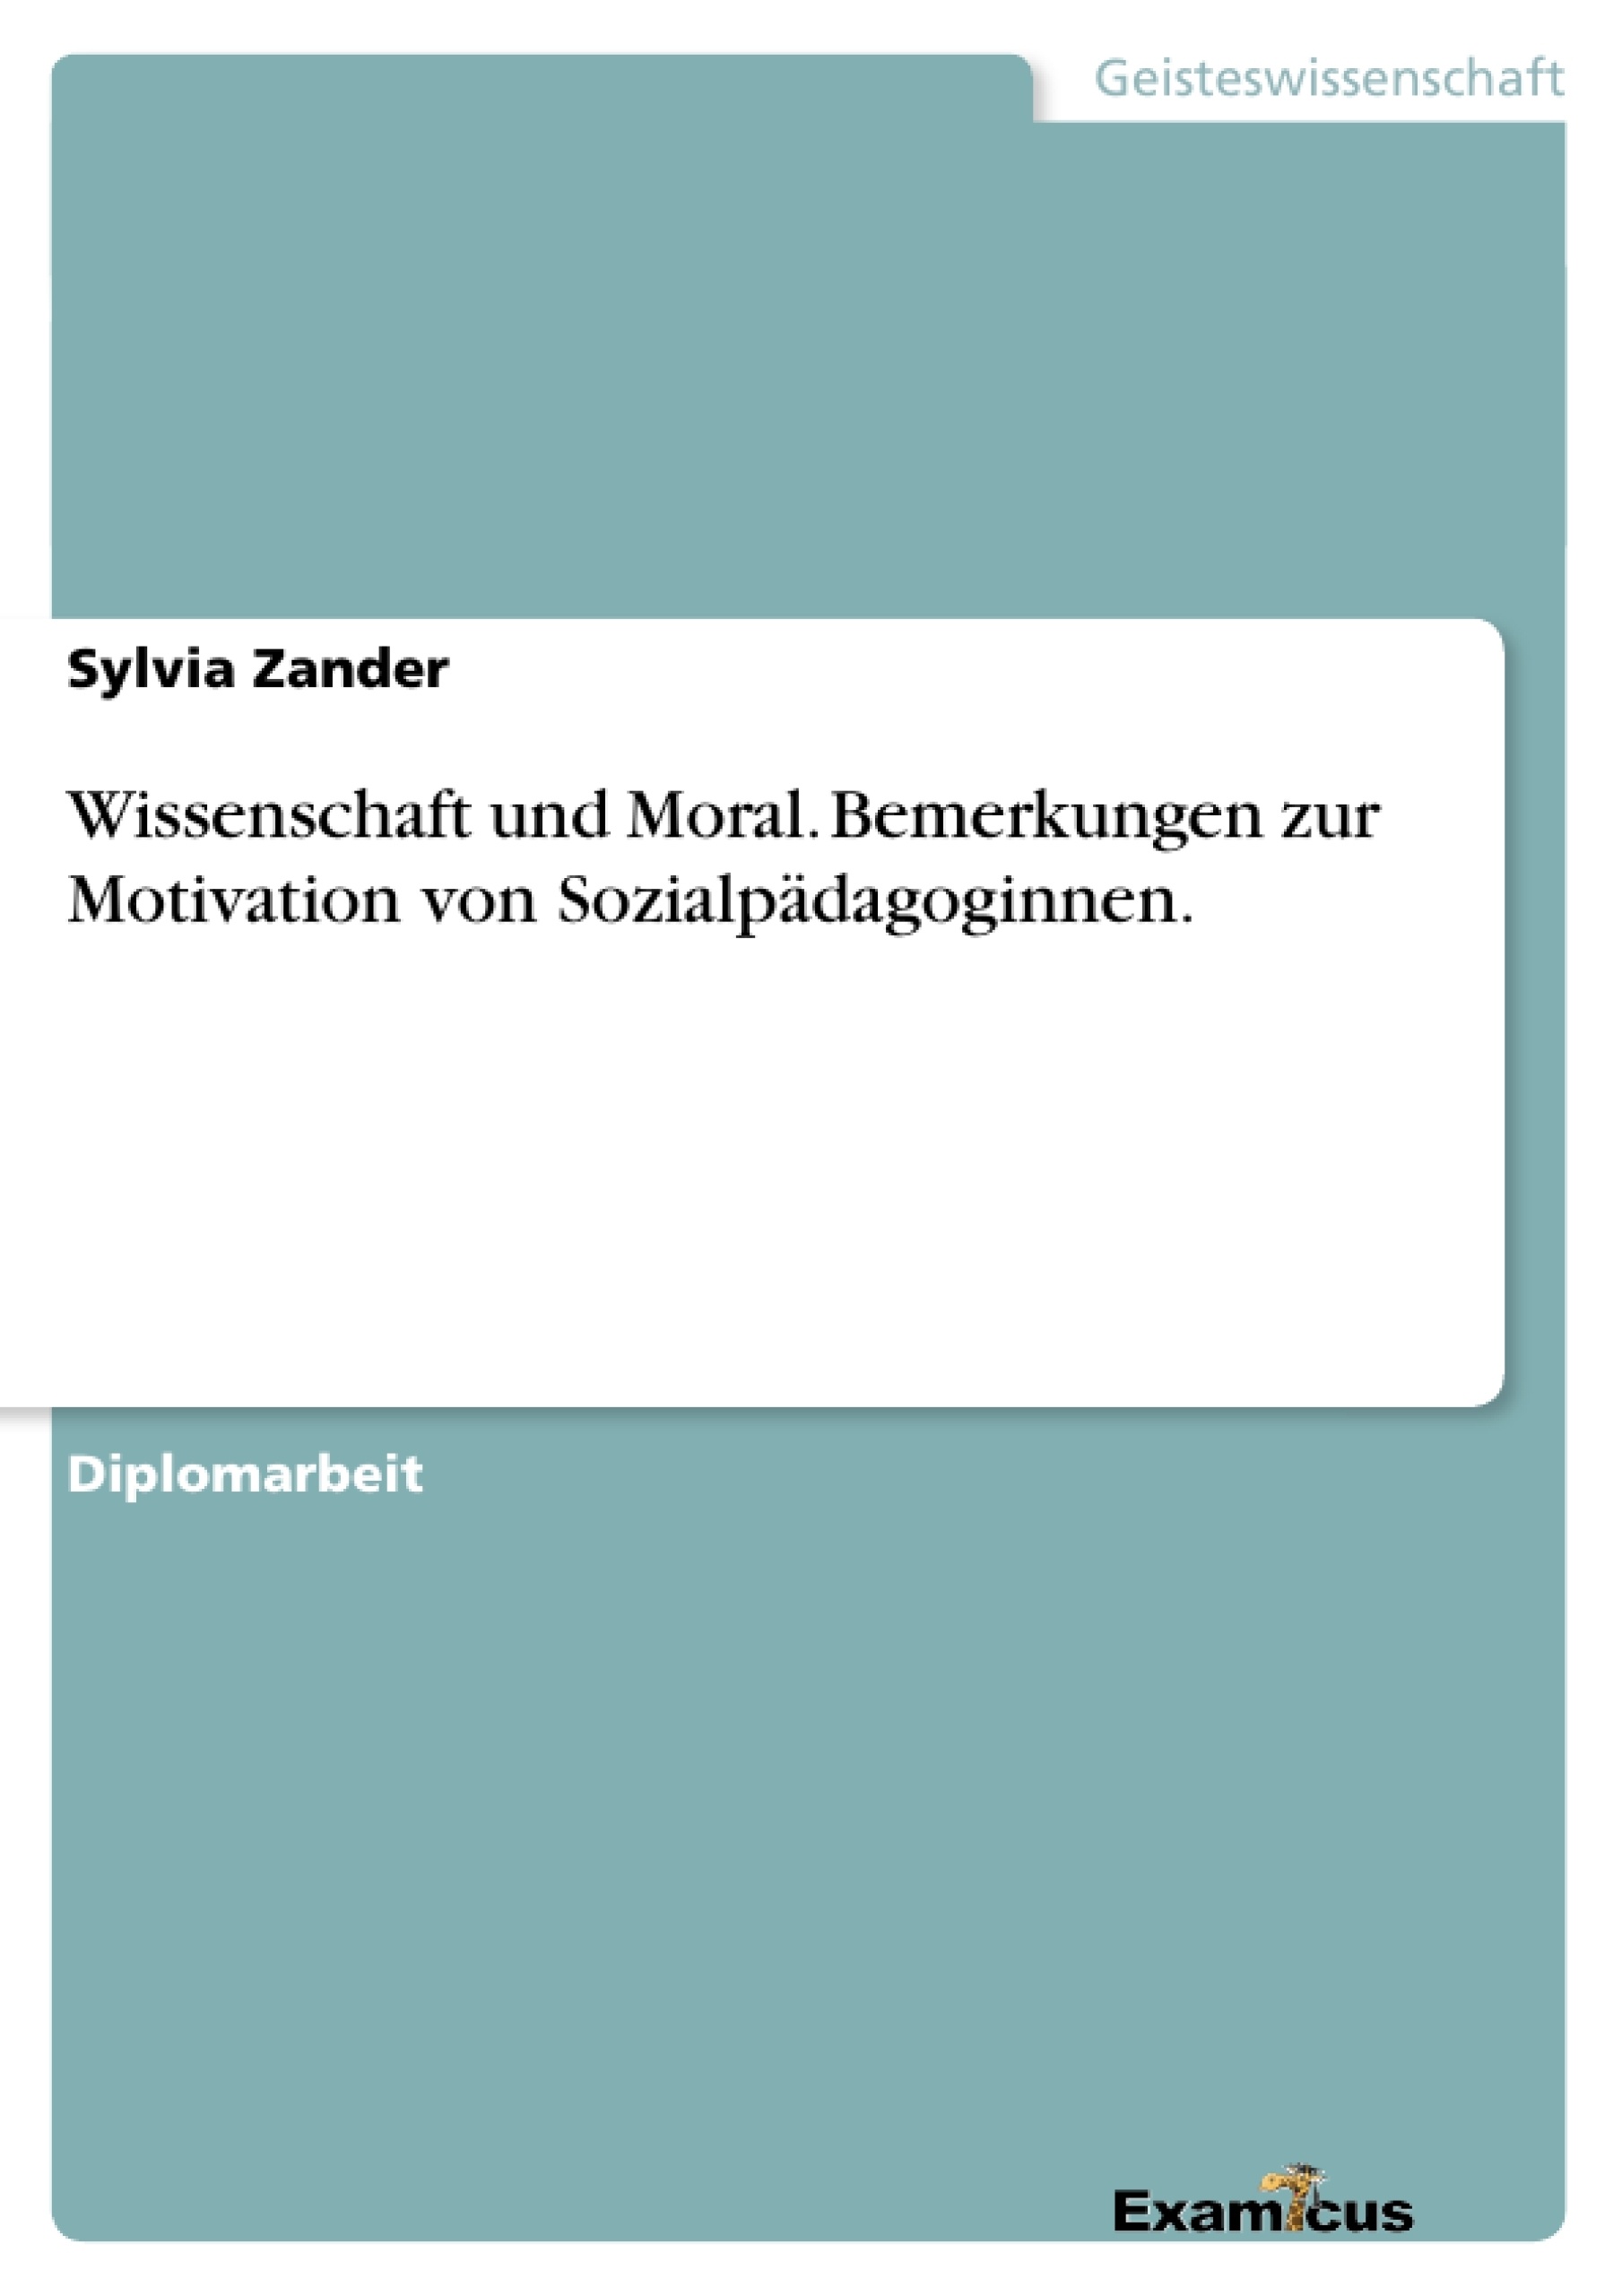 Title: Wissenschaft und Moral. Bemerkungen zur Motivation von Sozialpädagoginnen.